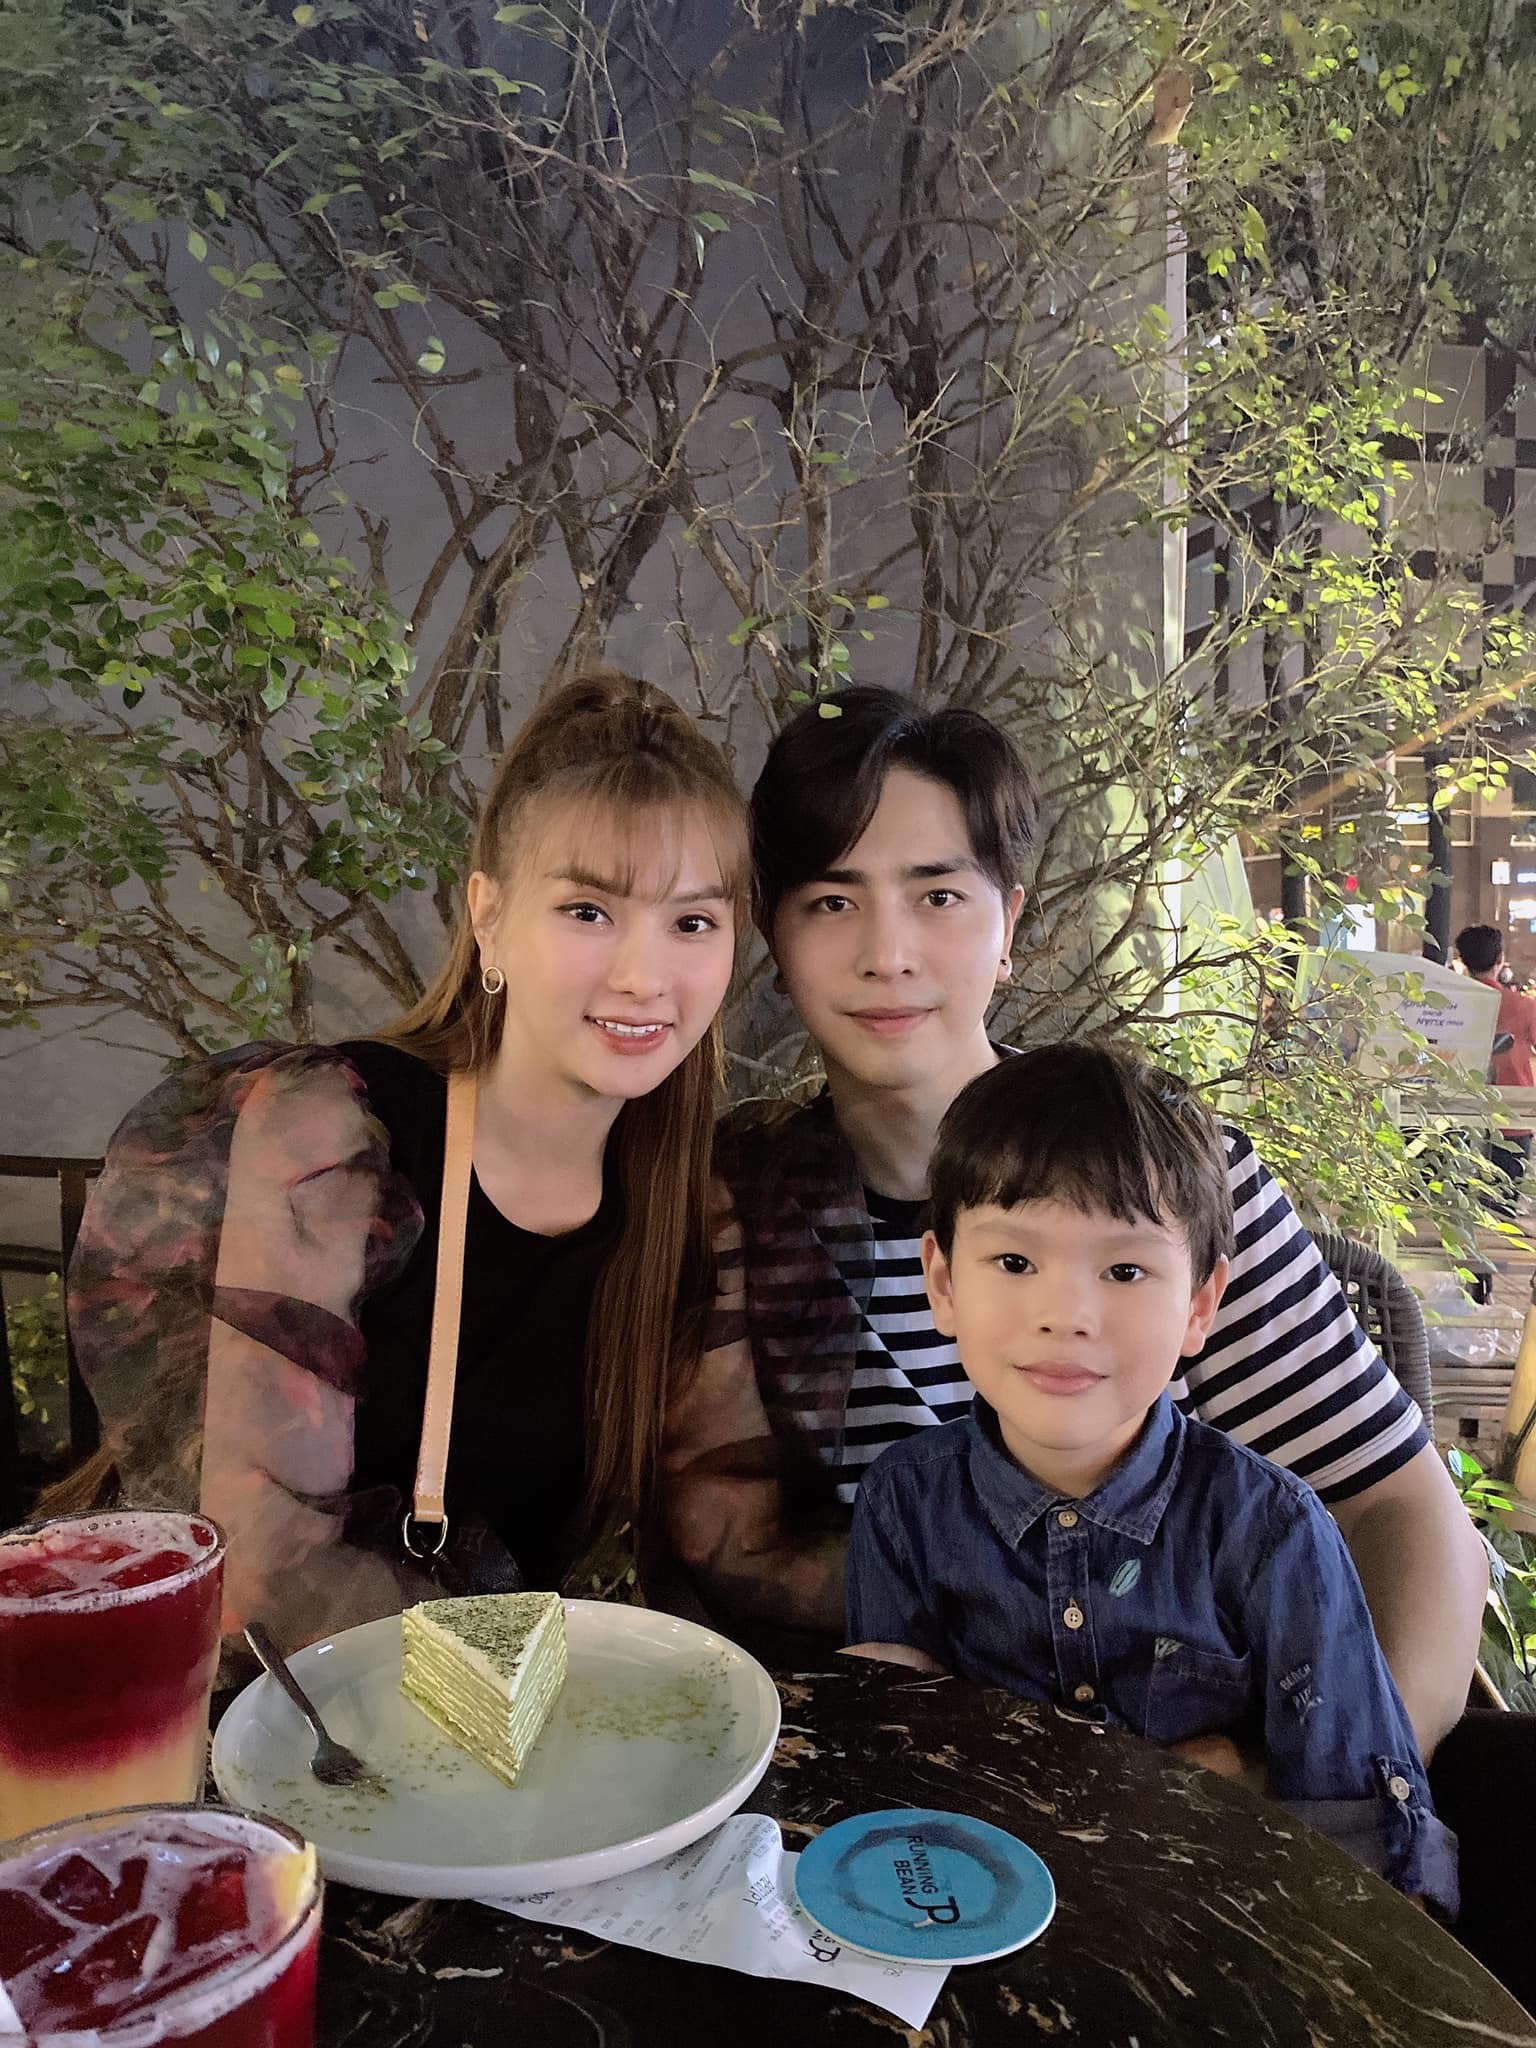 Vợ chồng Thu Thủy thường xuyên đăng tải khoảnh khắc hạnh phúc bên con trai lên mạng xã hội.